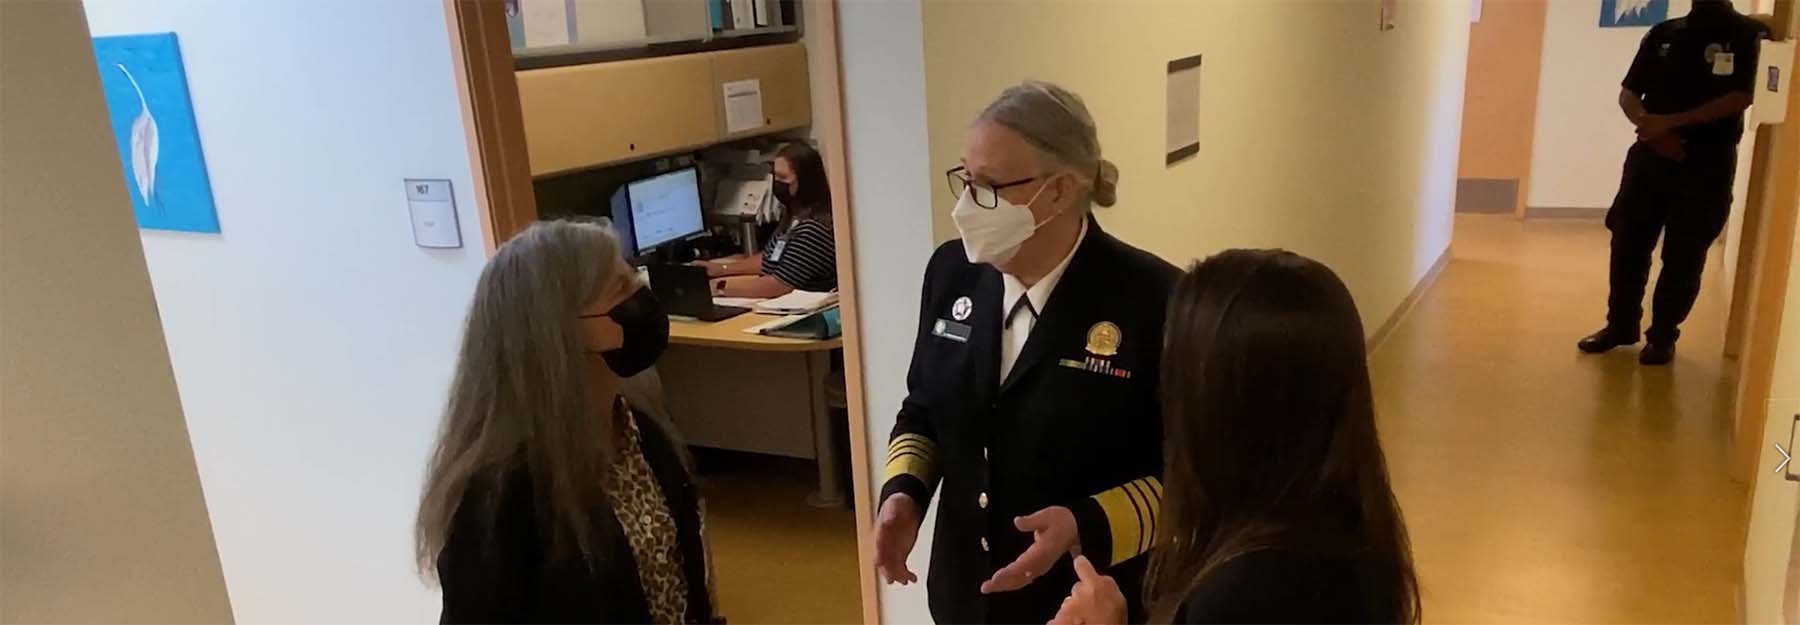 La almirante Rachel Levine, MD habla con profesionales en el Centro de Salud Reproductiva de la UNM